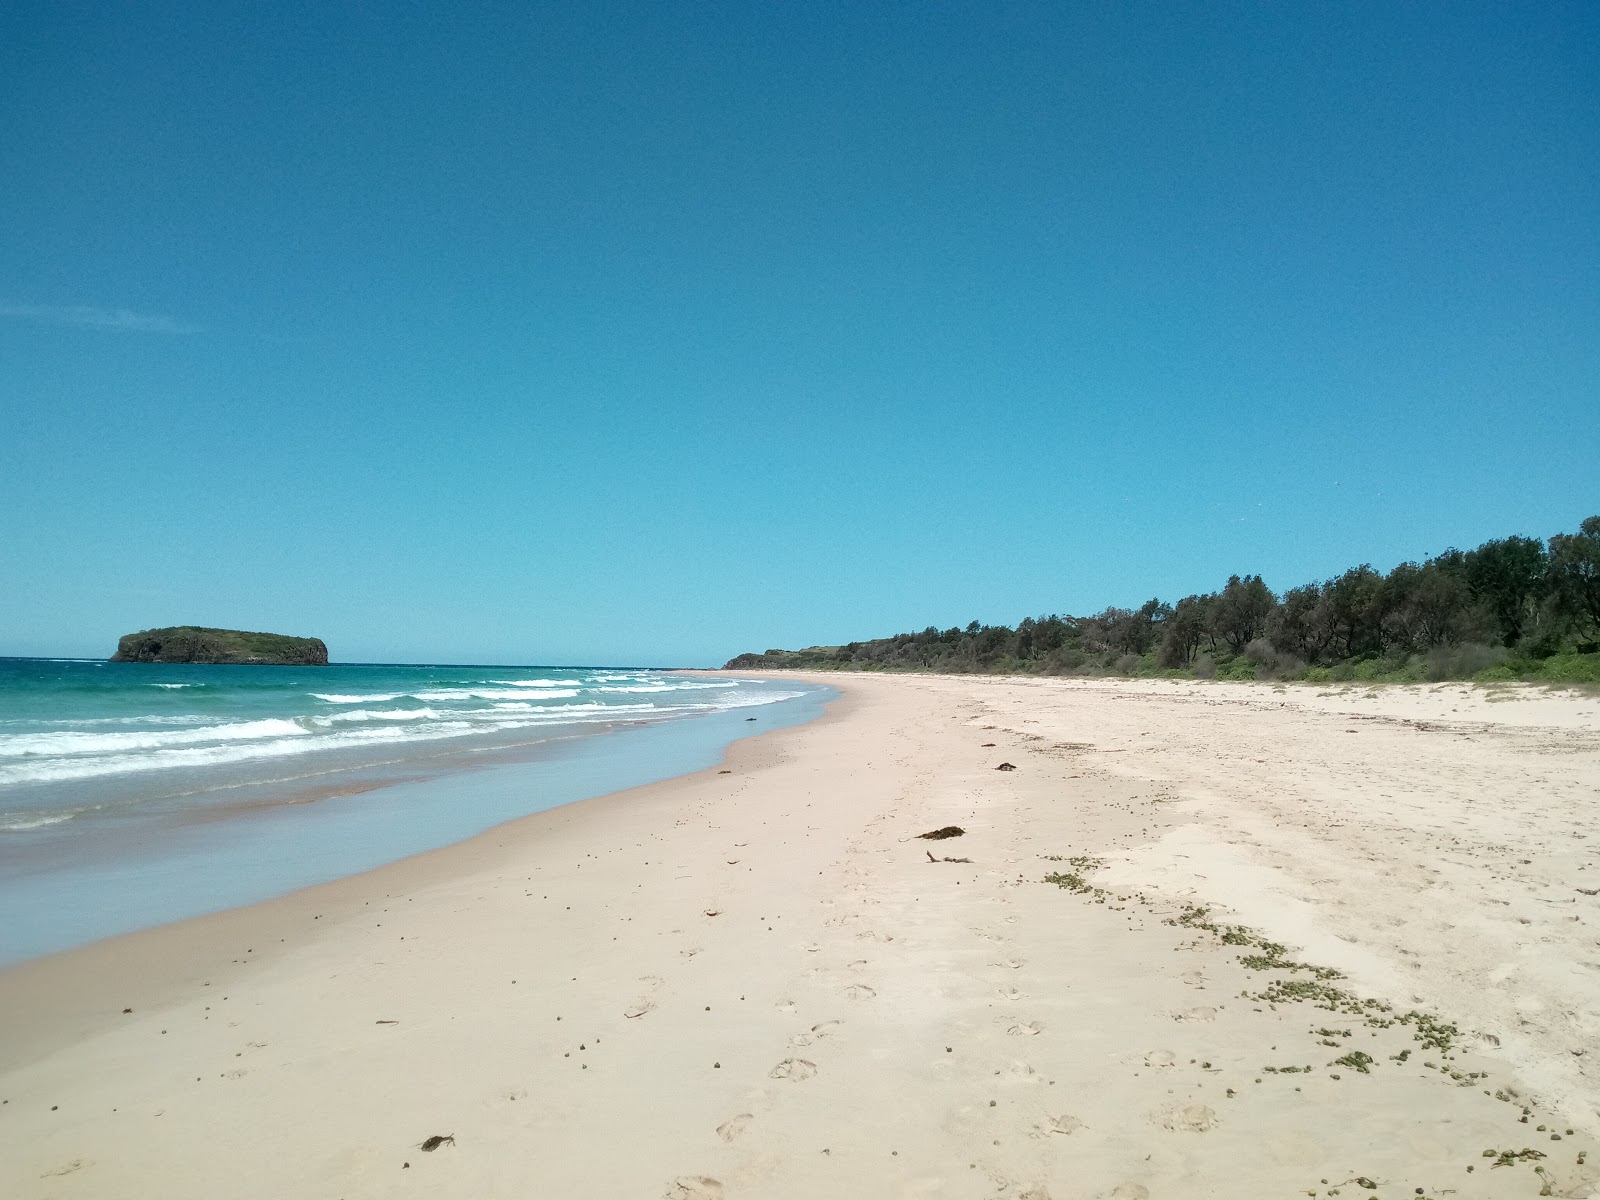 Foto di Minnamurra Beach ubicato in zona naturale